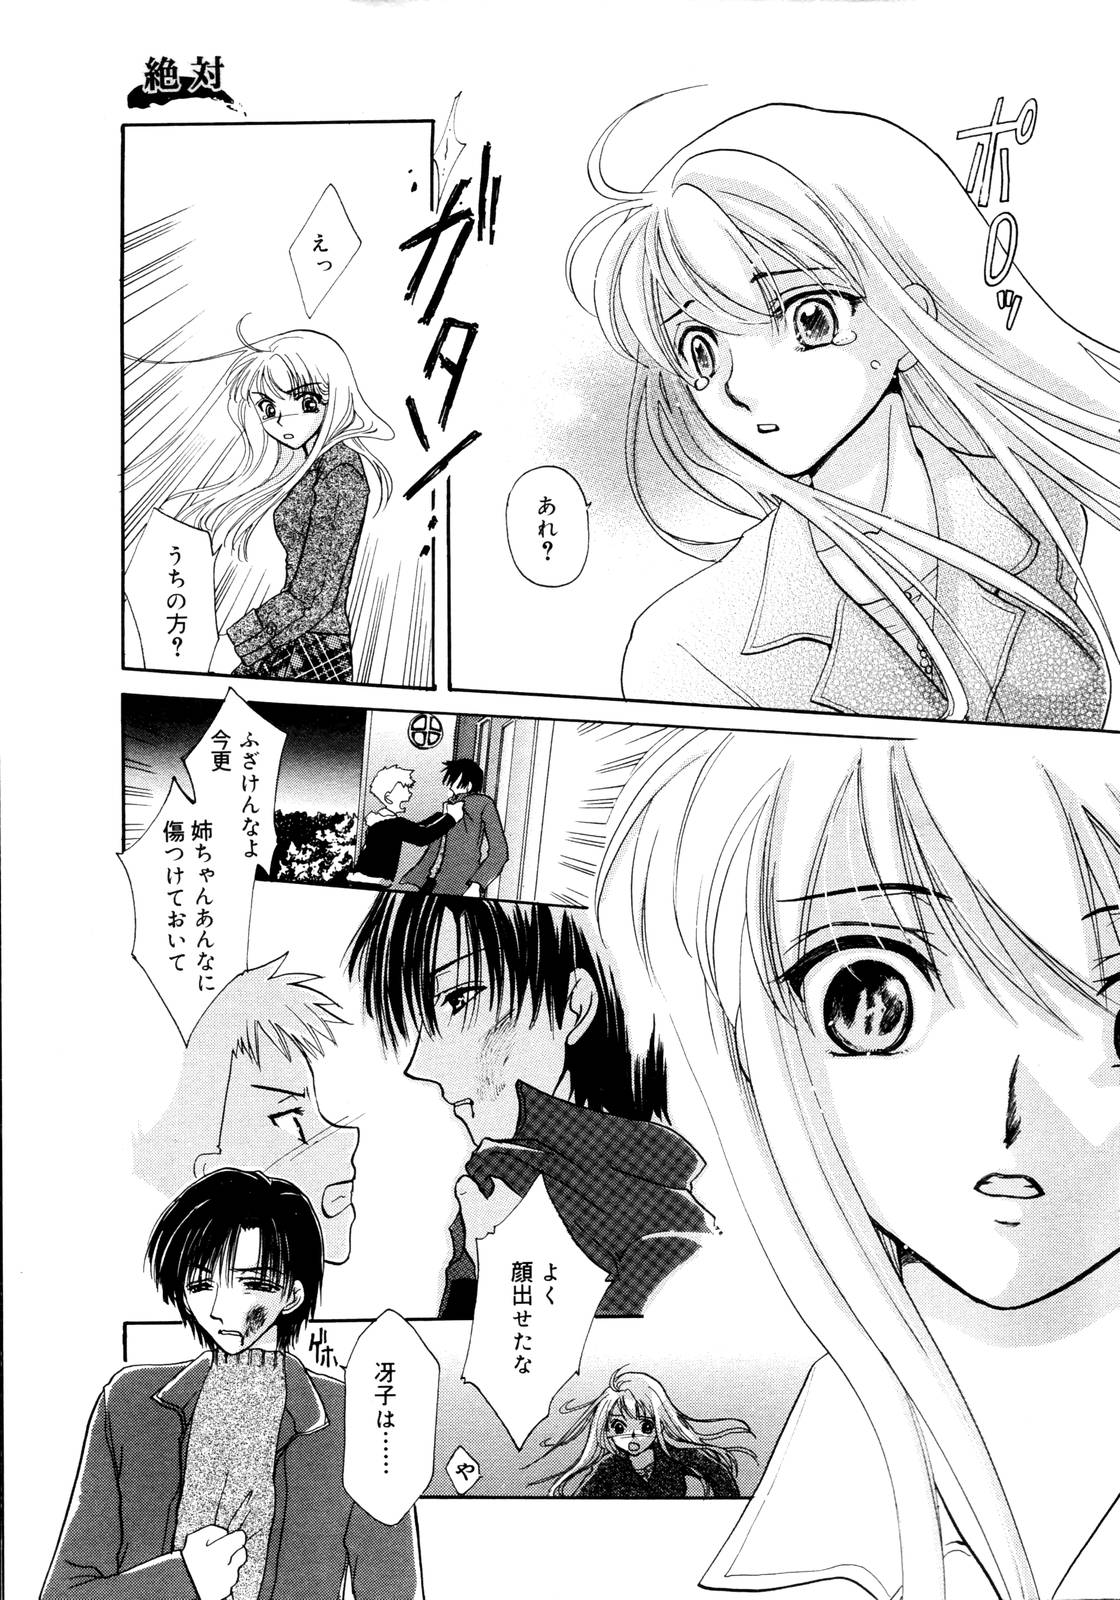 Manga Bangaichi 2006-01 page 11 full